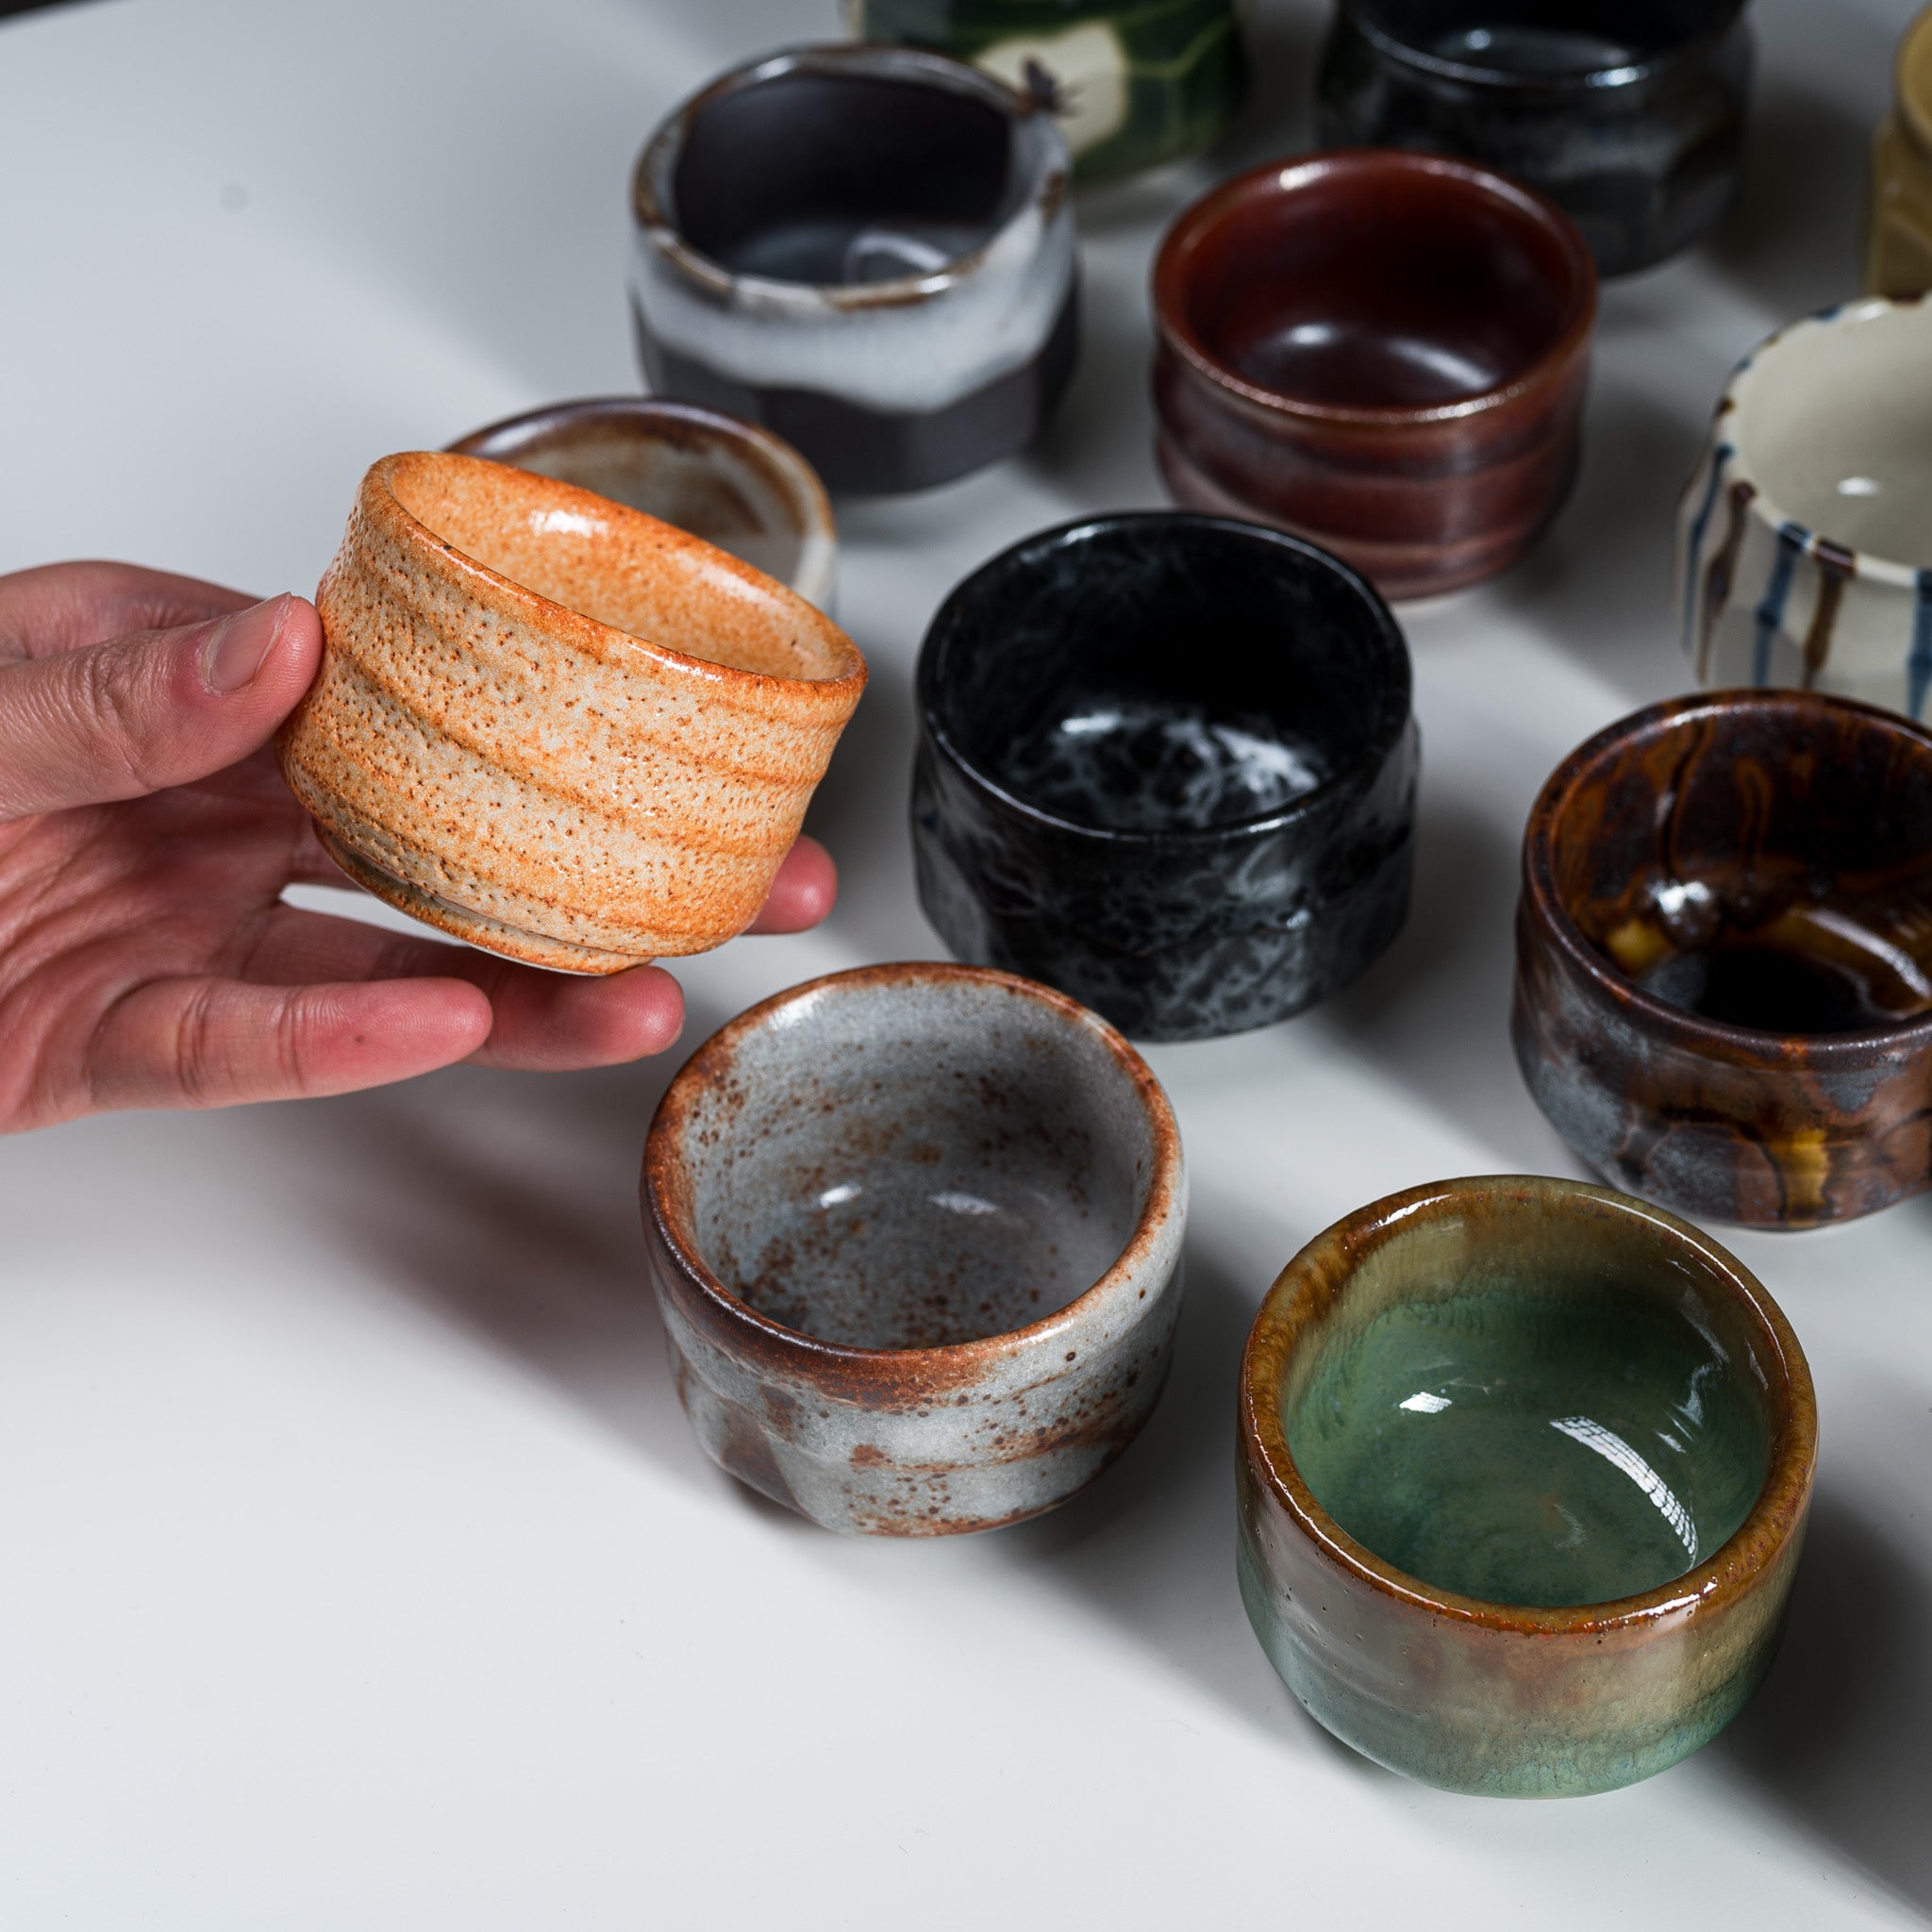 Mino ware Pottery Sake Cup / Teacup - Yuteki / 美濃焼き ぐい呑み